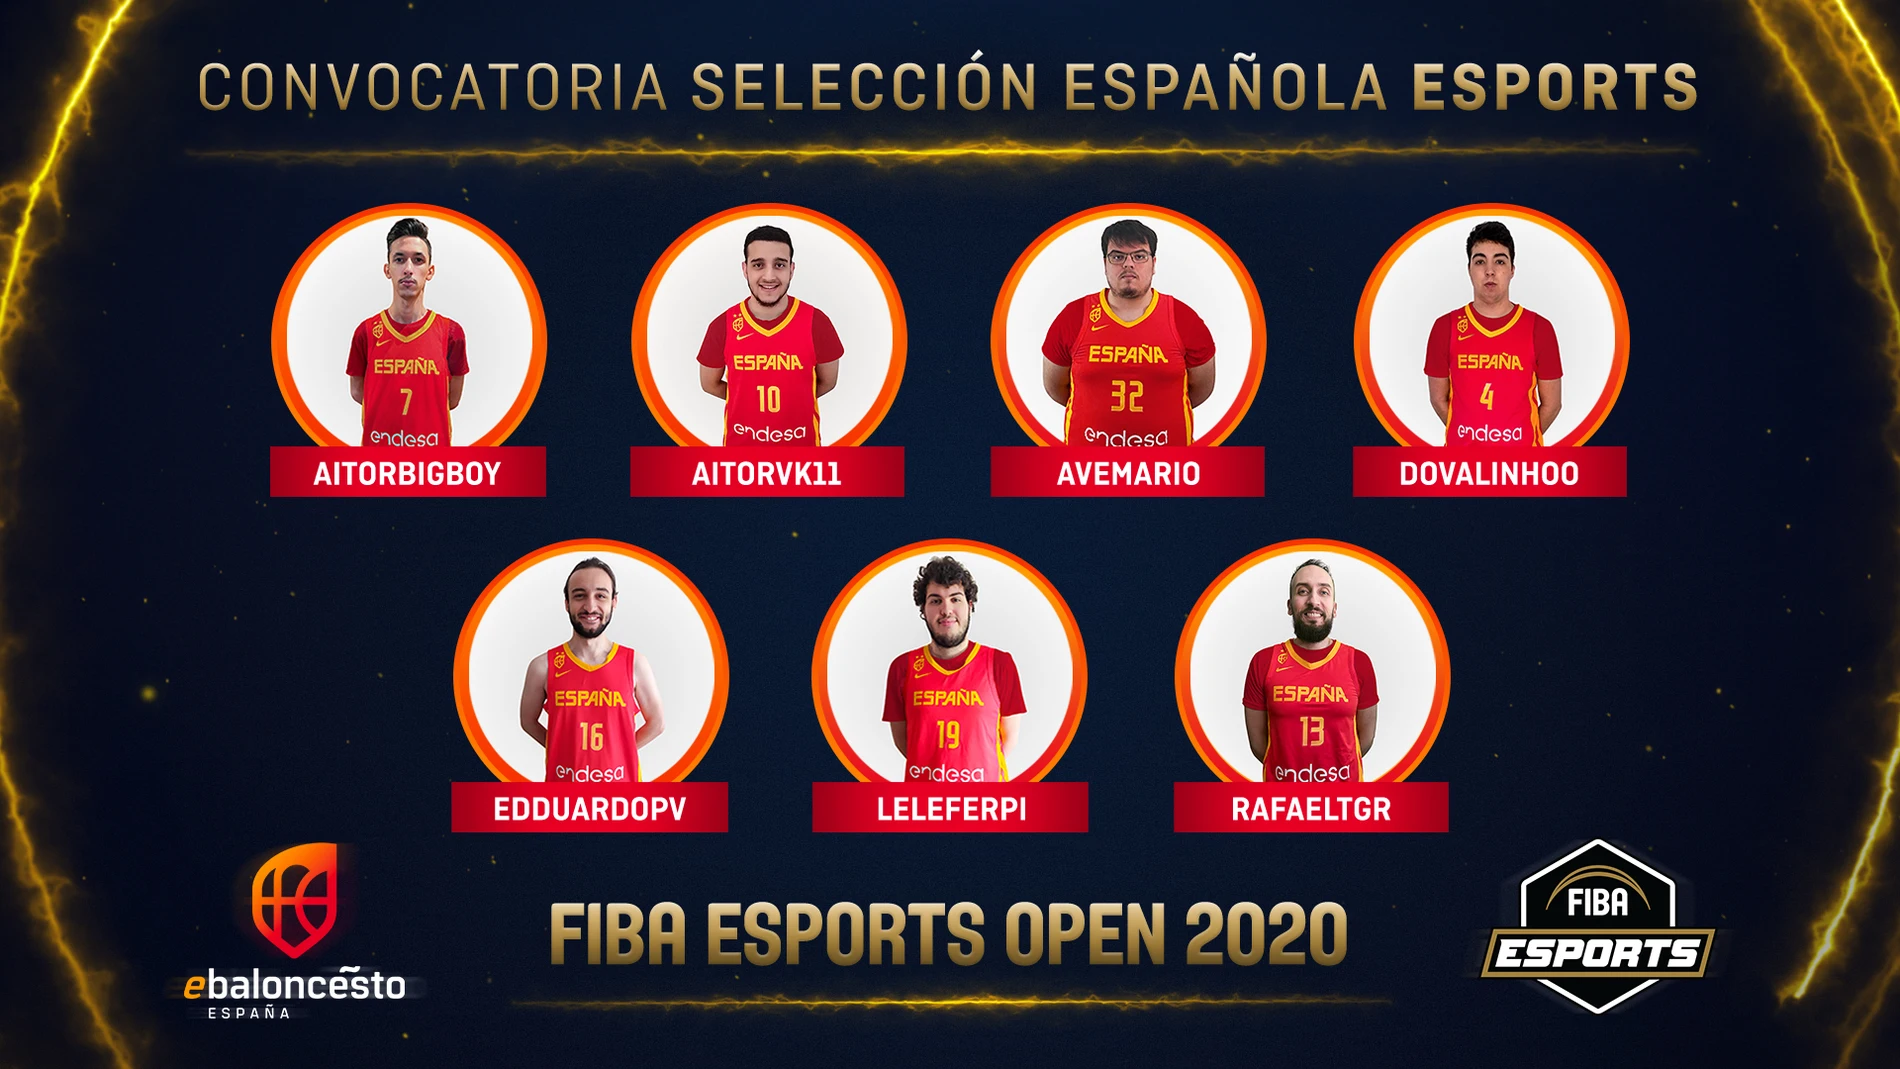 Jugadores convocados para la FIBA Esports Open 2020